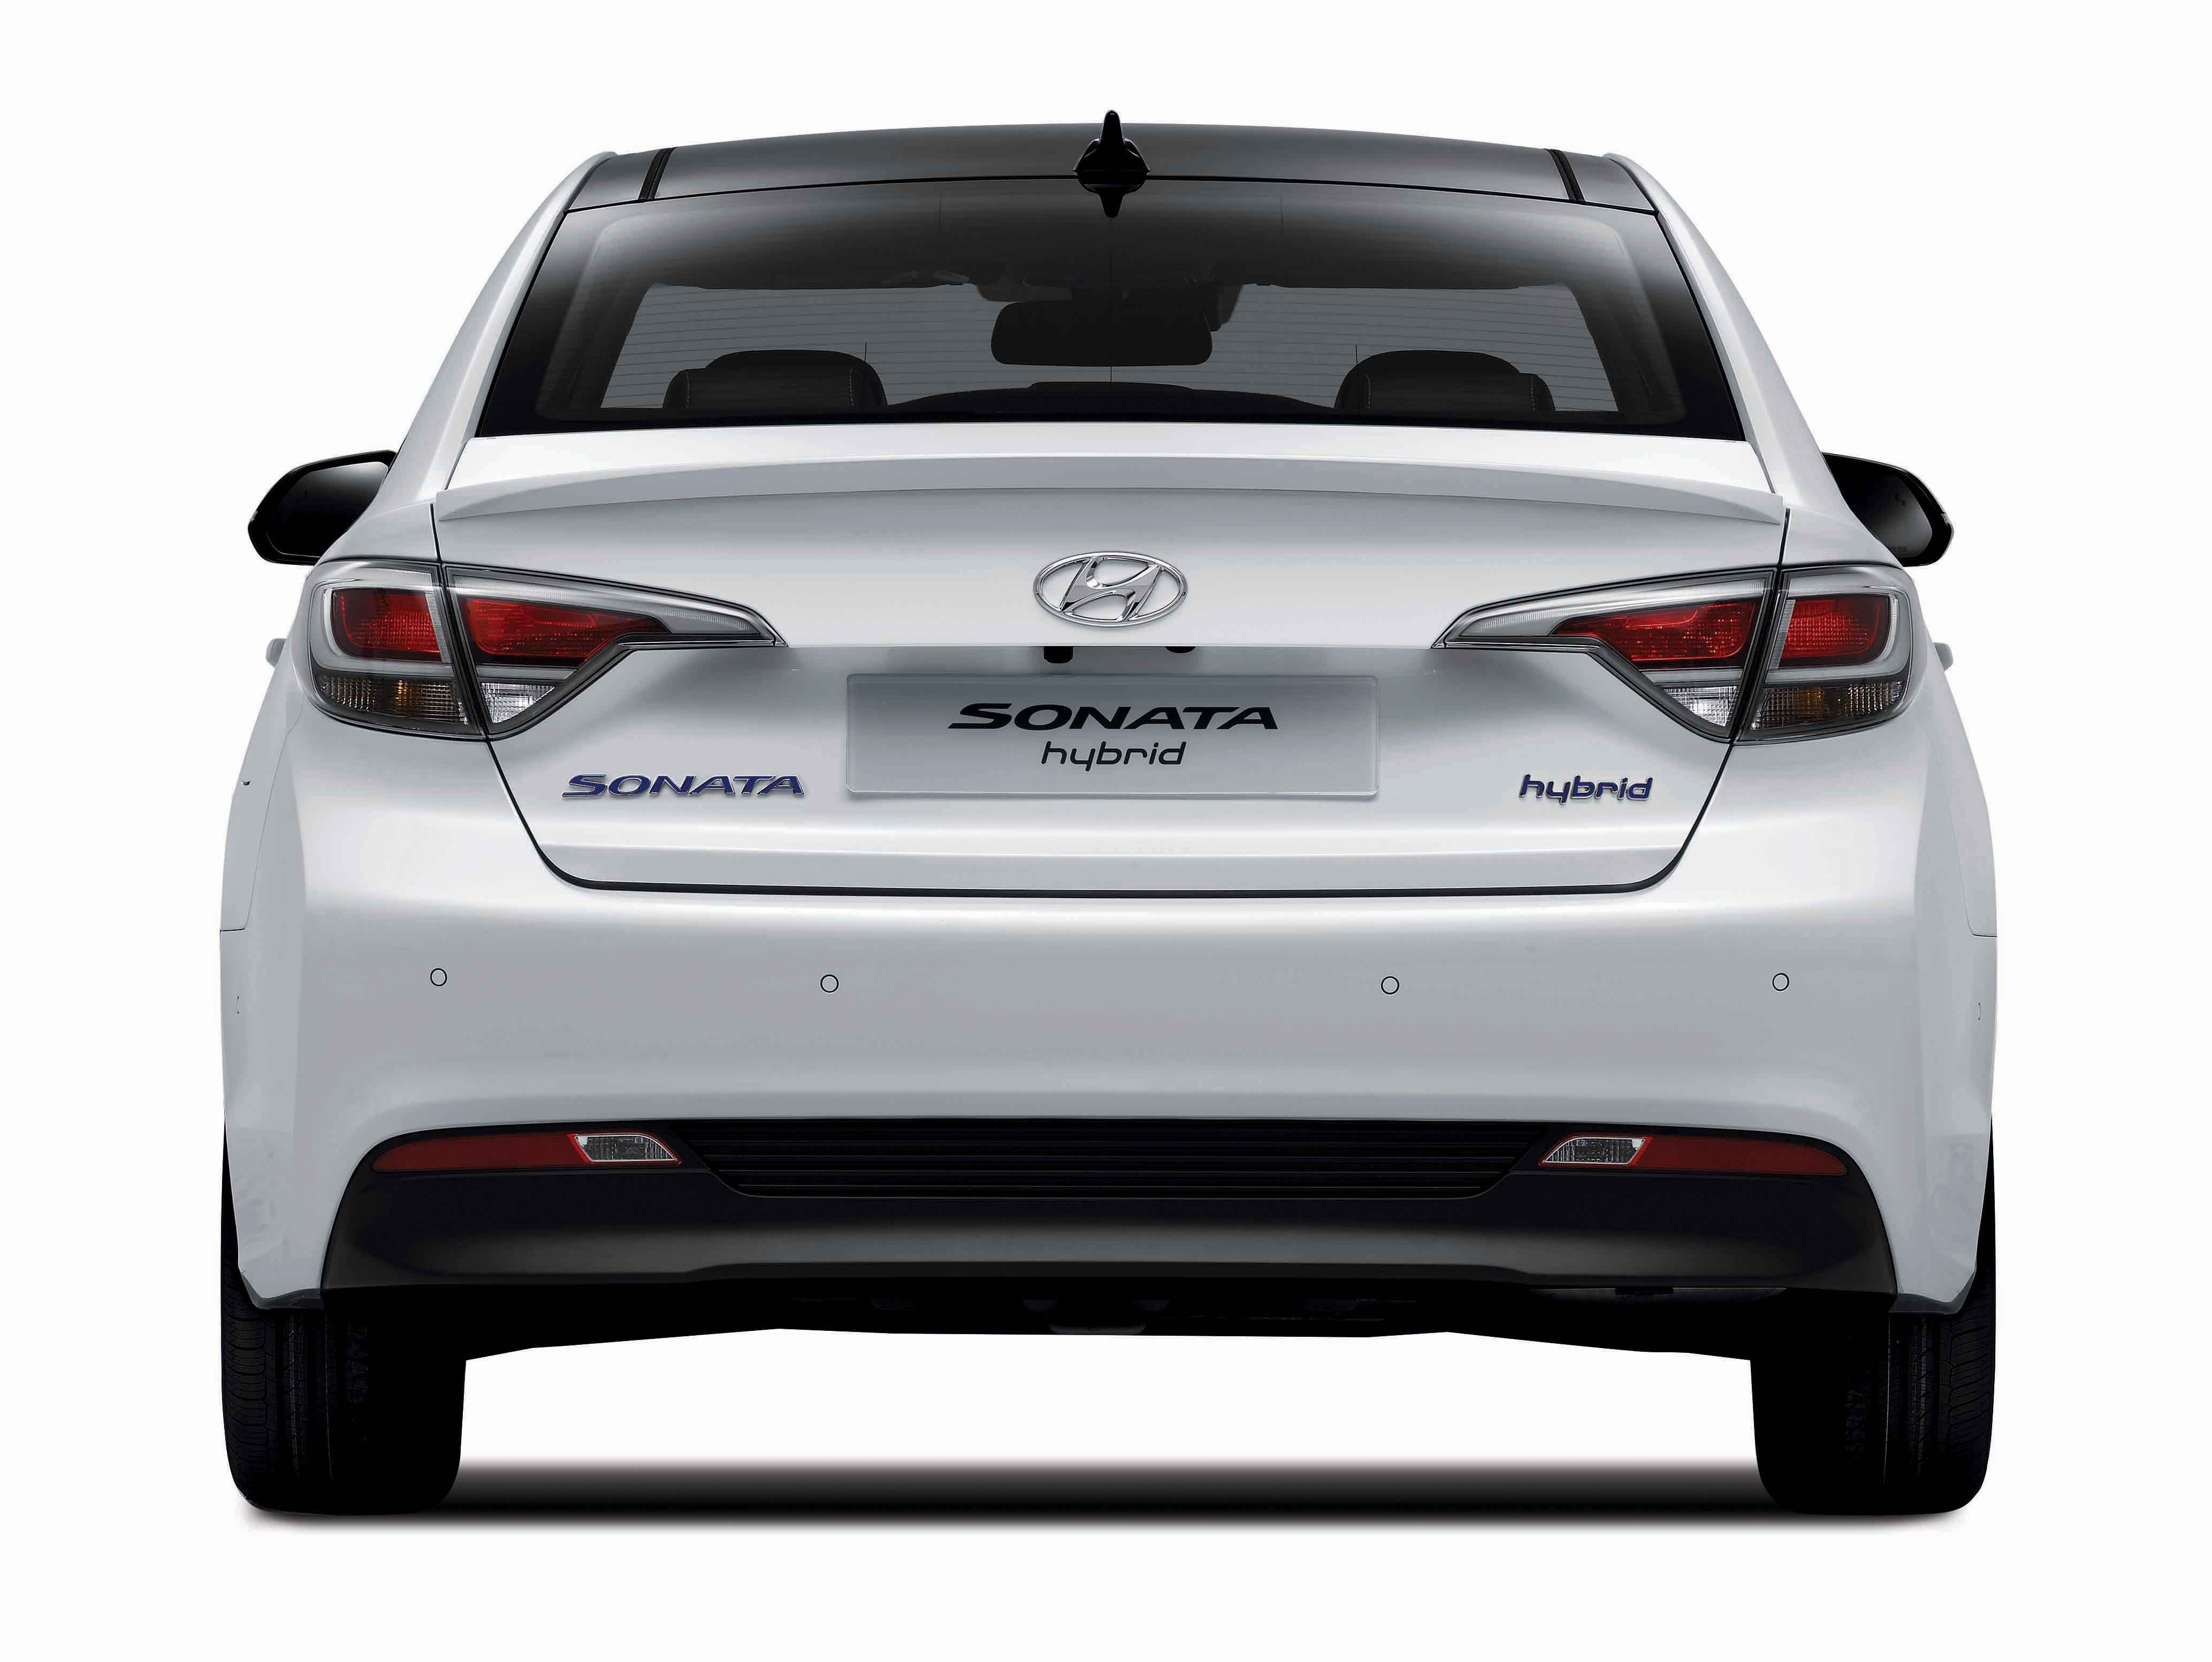 Hyundai Sonata Plug-In Hybrid to Debut in January 12 at 2015 NAIAS